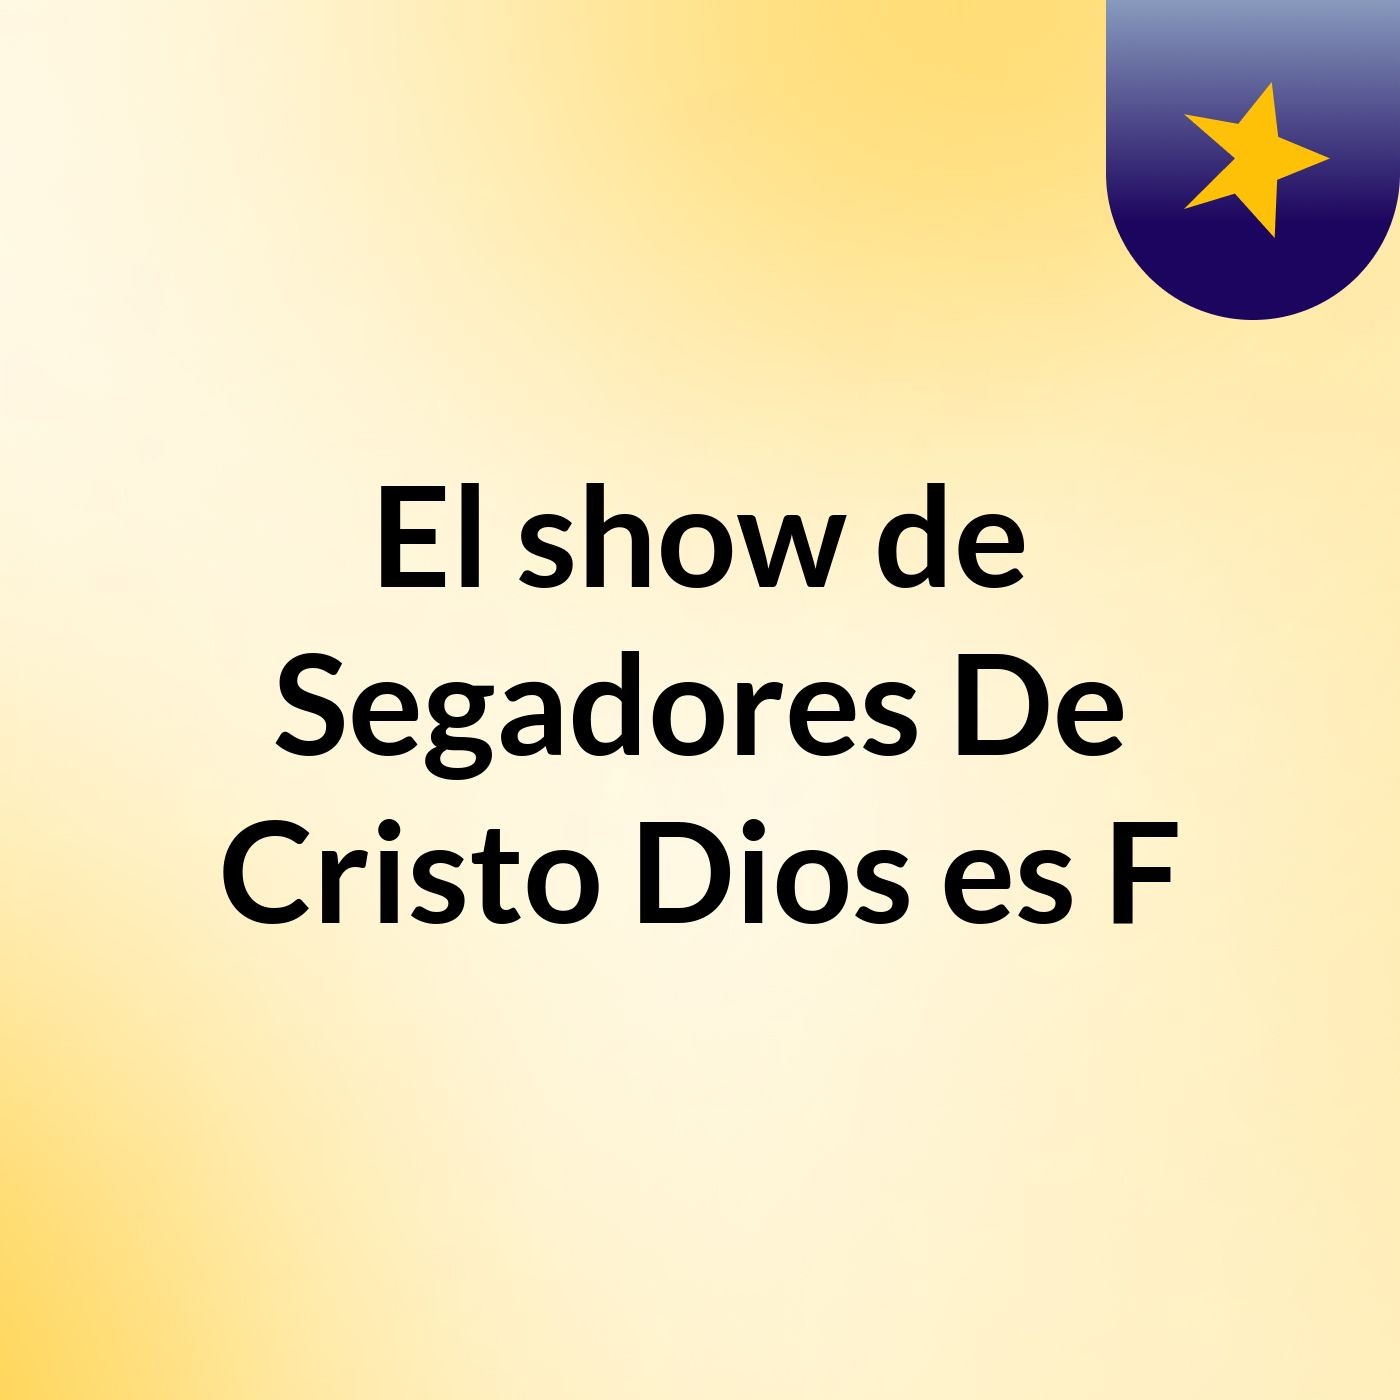 El show de Segadores De Cristo Dios es F